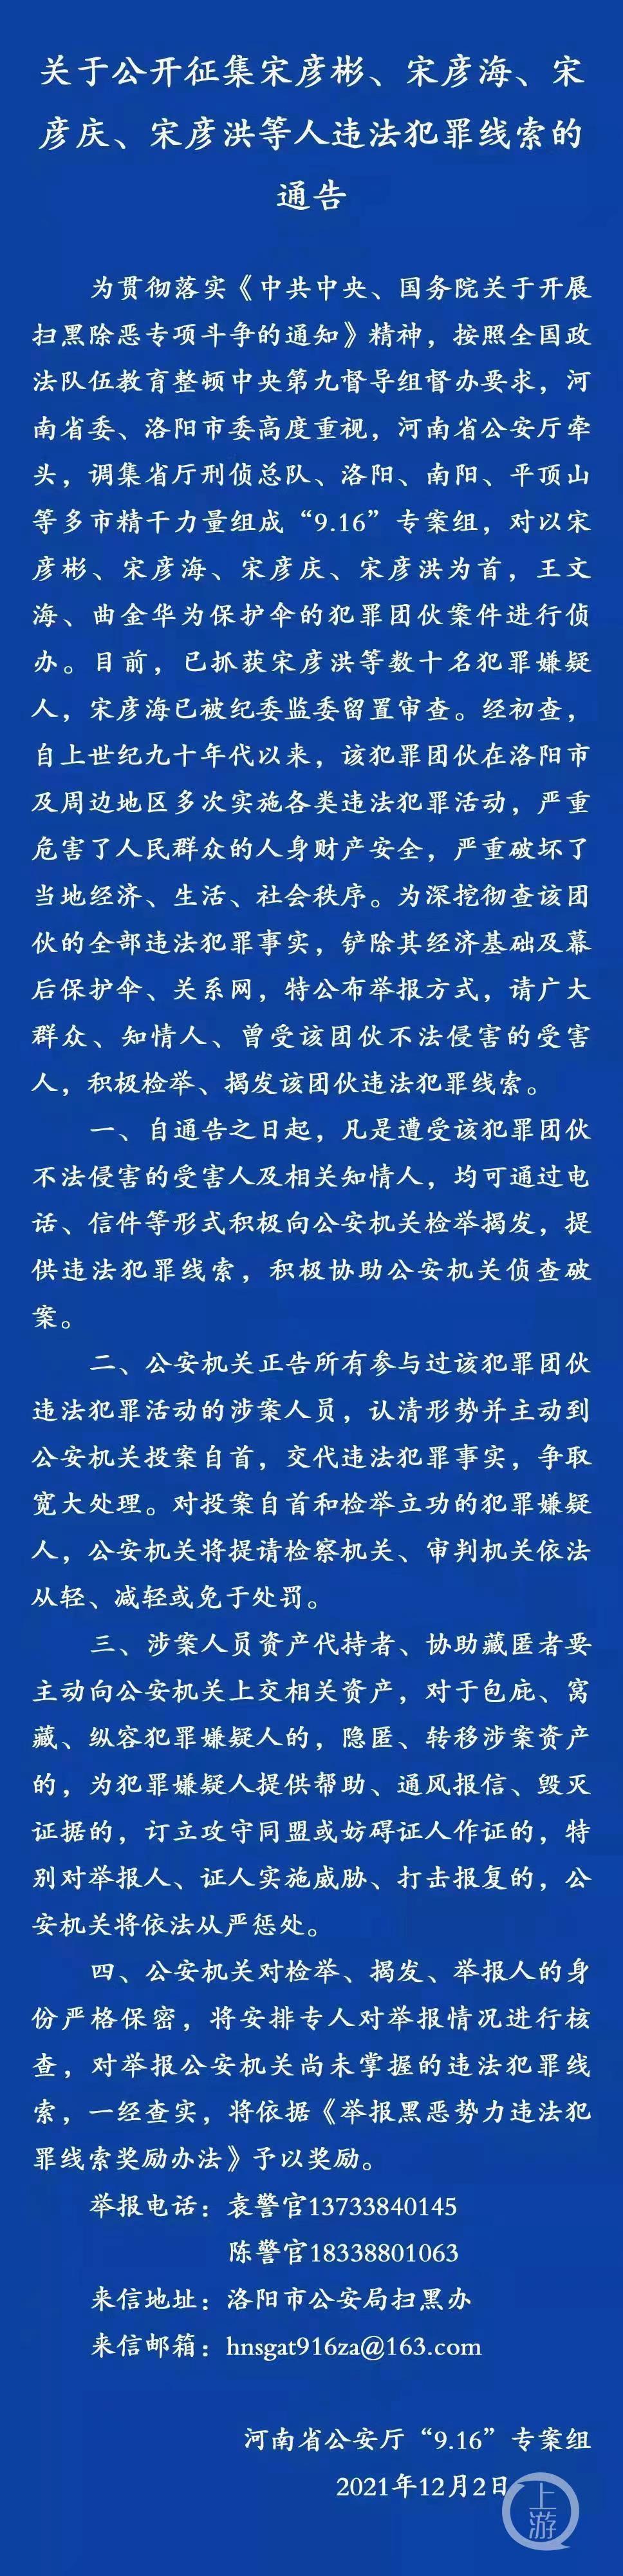 河南省洛阳市公安局官方微信平安洛阳发布通告,公开征集宋彦彬